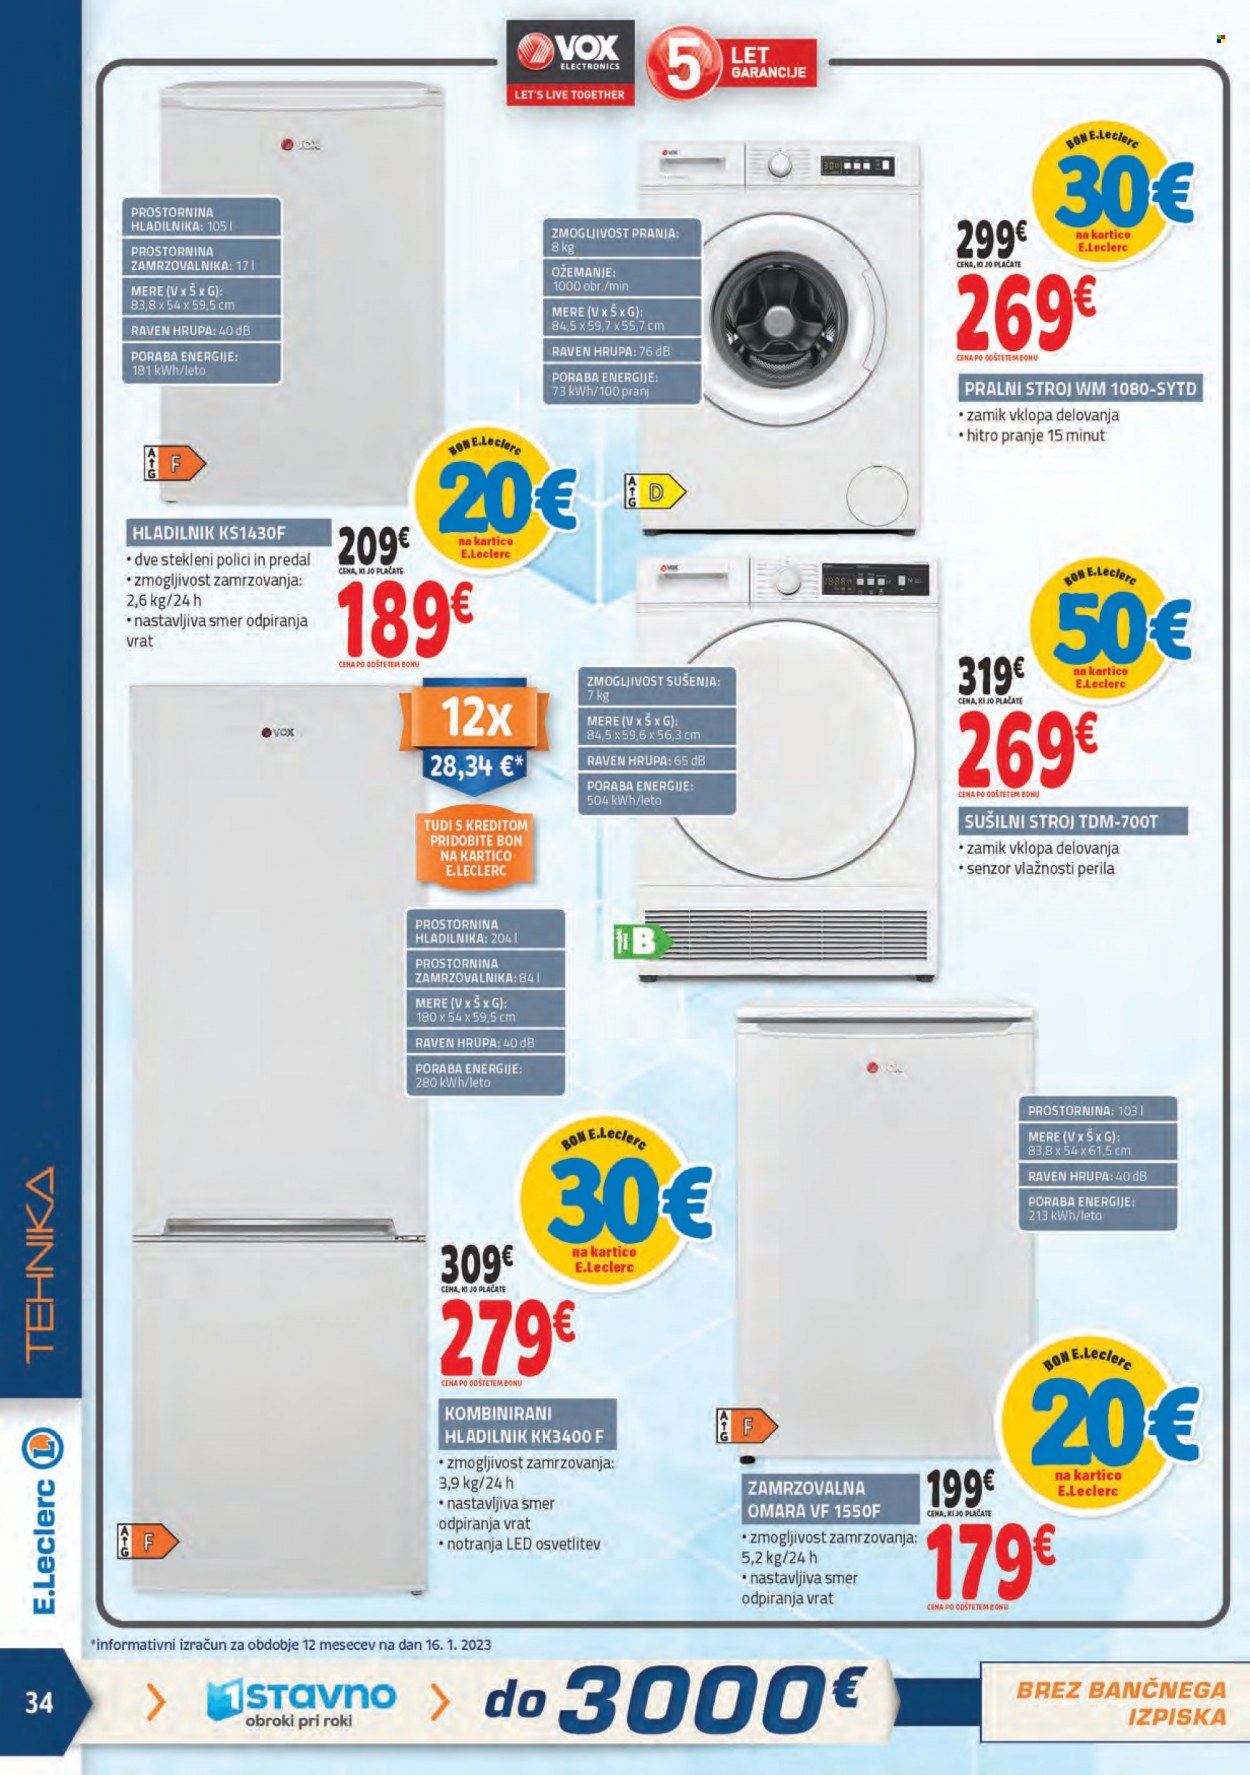 E.Leclerc katalog - 25.1.2023 - 4.2.2023 - Ponudba izdelkov - zamrzovalna omara, hladilnik, pralni stroj. Stran 34.